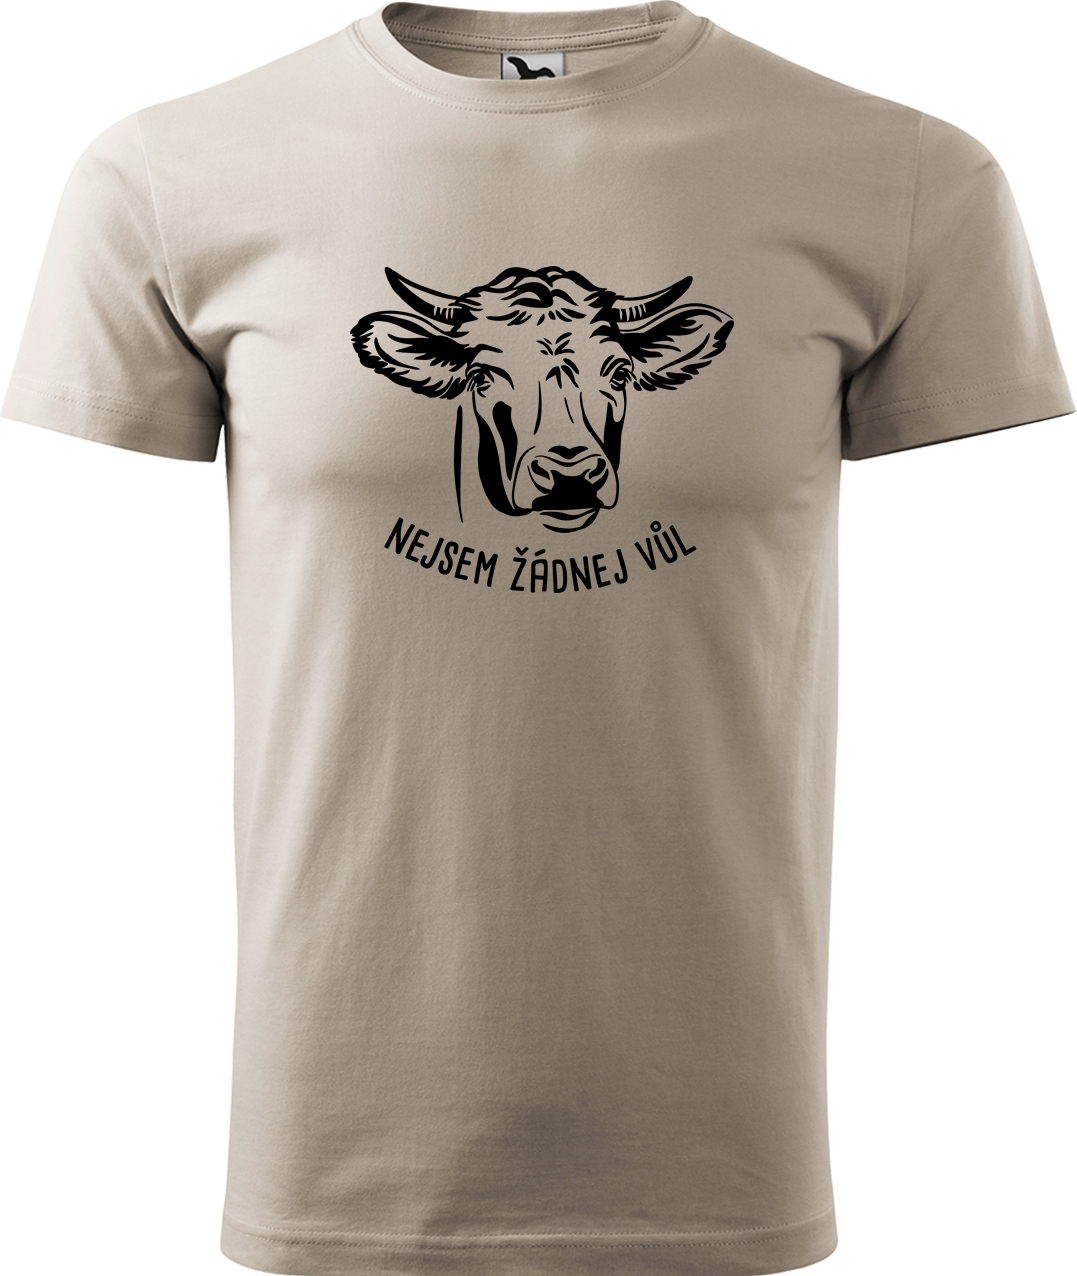 Pánské tričko s krávou - Nejsem žádnej vůl Velikost: M, Barva: Béžová (51), Střih: pánský